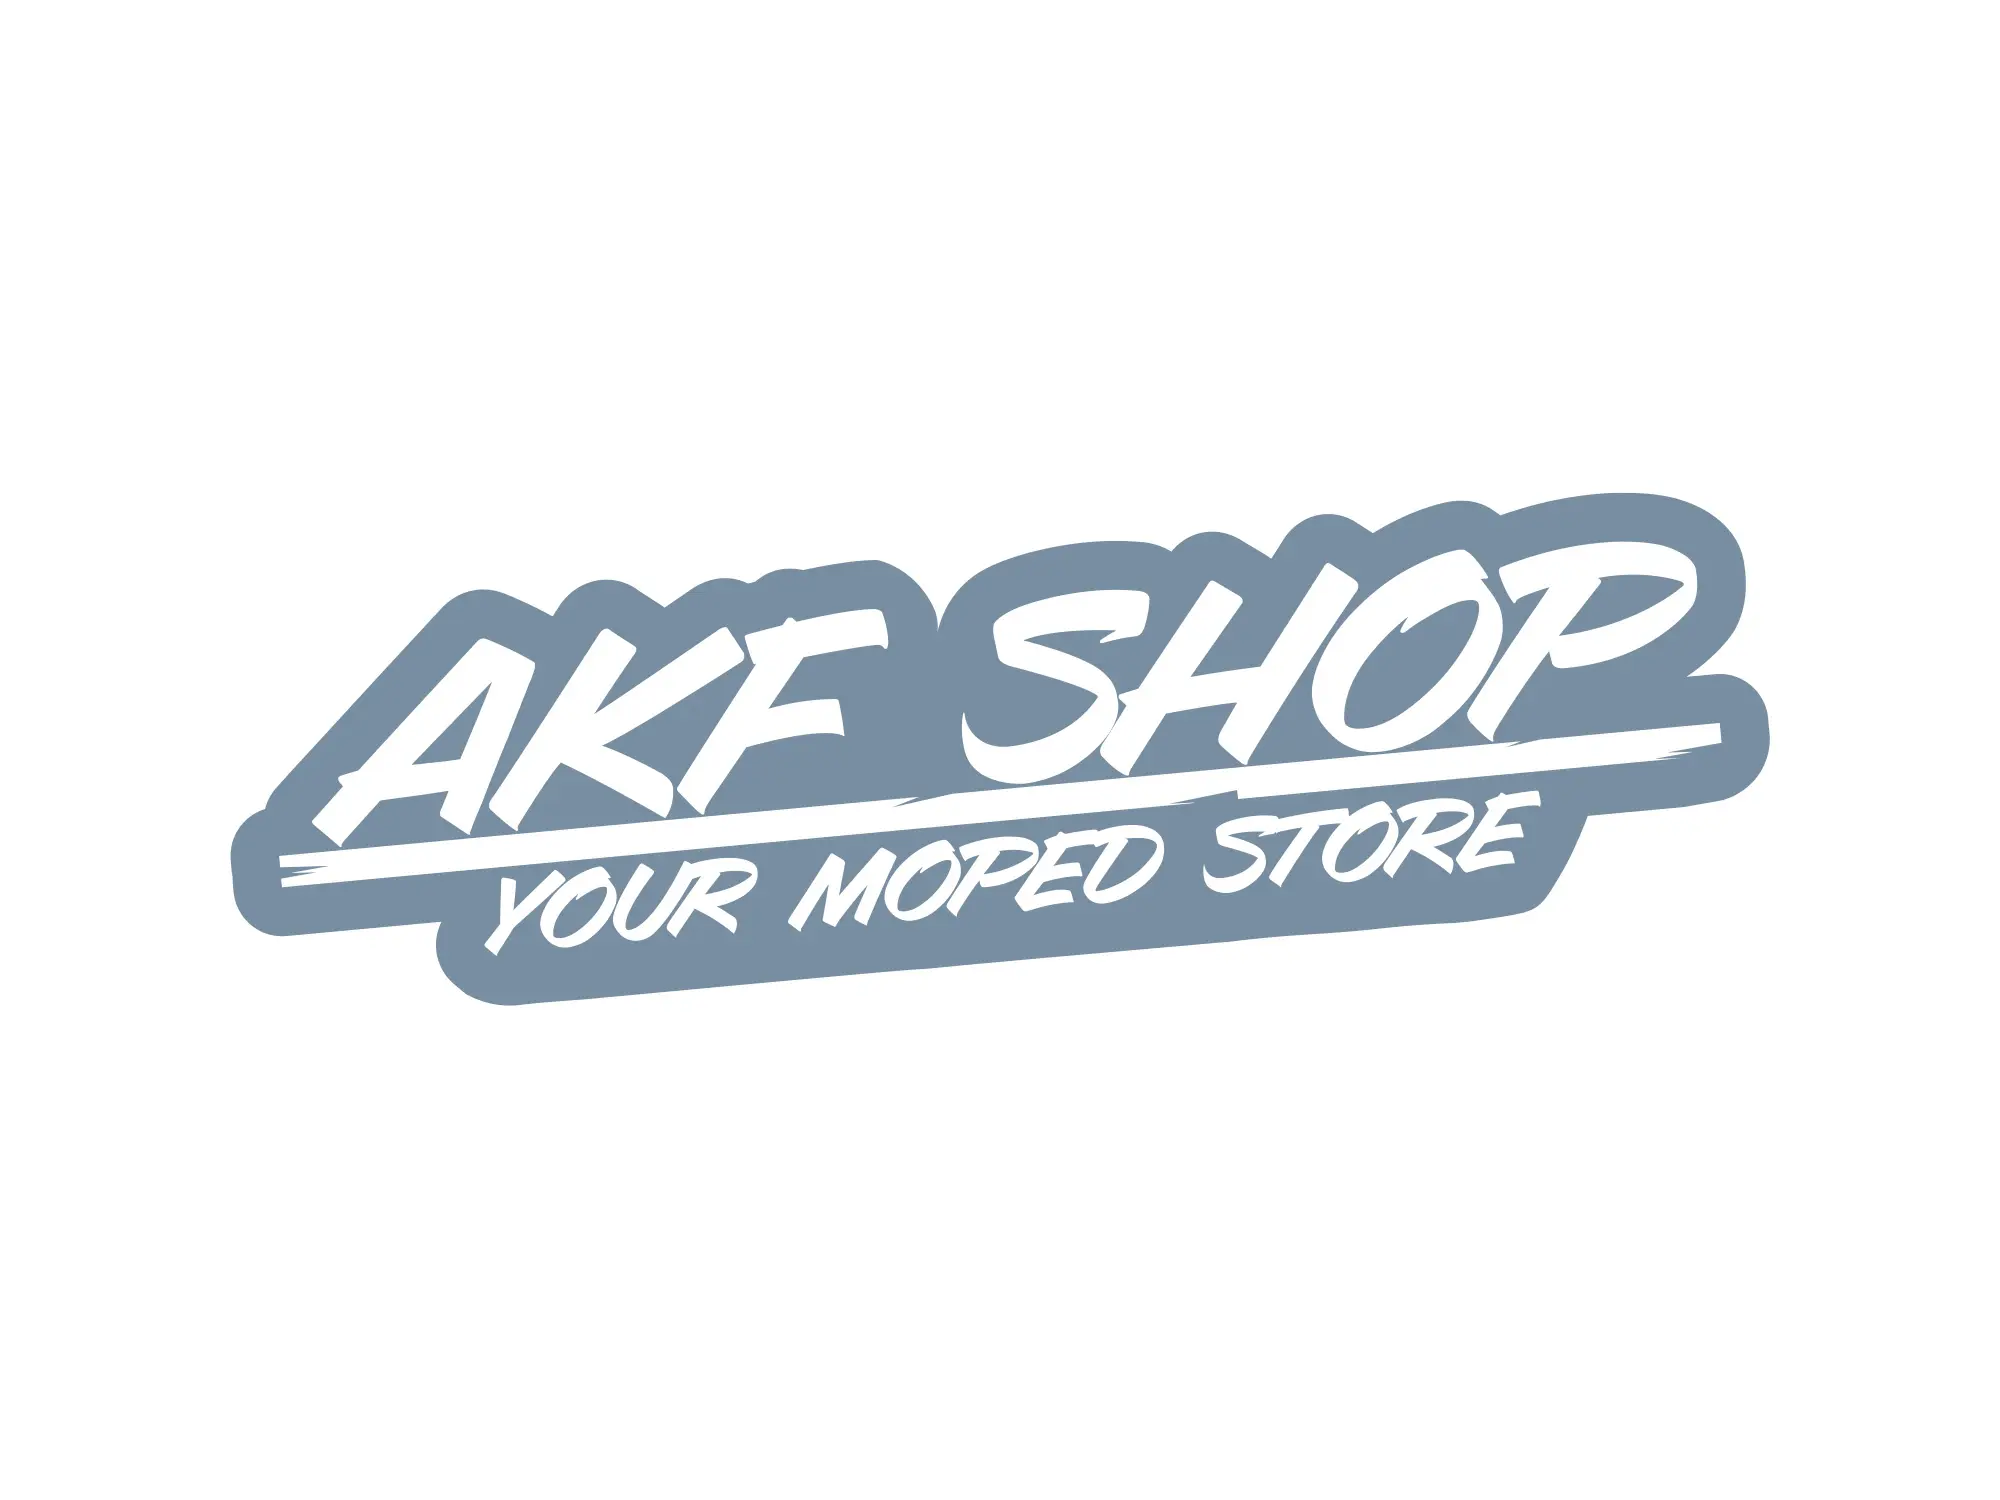 Aufkleber - "AKF Shop - your moped store" Grau/Weiß, konturgeschnitten, Art.-Nr.: 10070124 - Bild 1